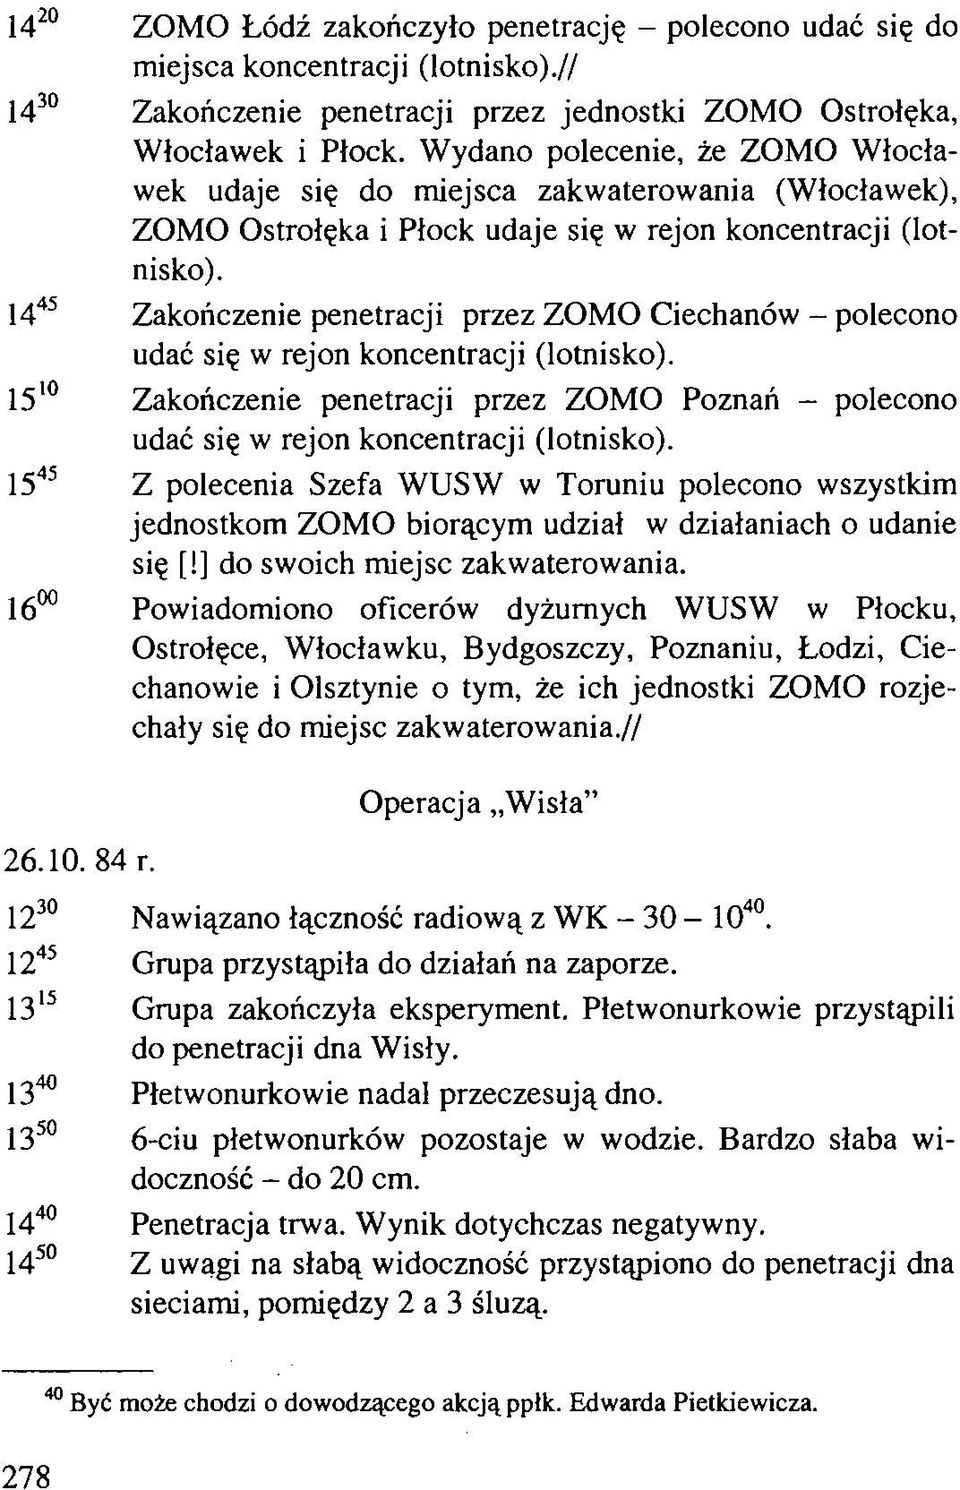 1445 Zakończenie penetracji przez ZOMO Ciechanów - polecono udać się w rejon koncentracji (lotnisko). 1510 Zakończenie penetracji przez ZOMO Poznań - polecono udać się w rejon koncentracji (lotnisko).